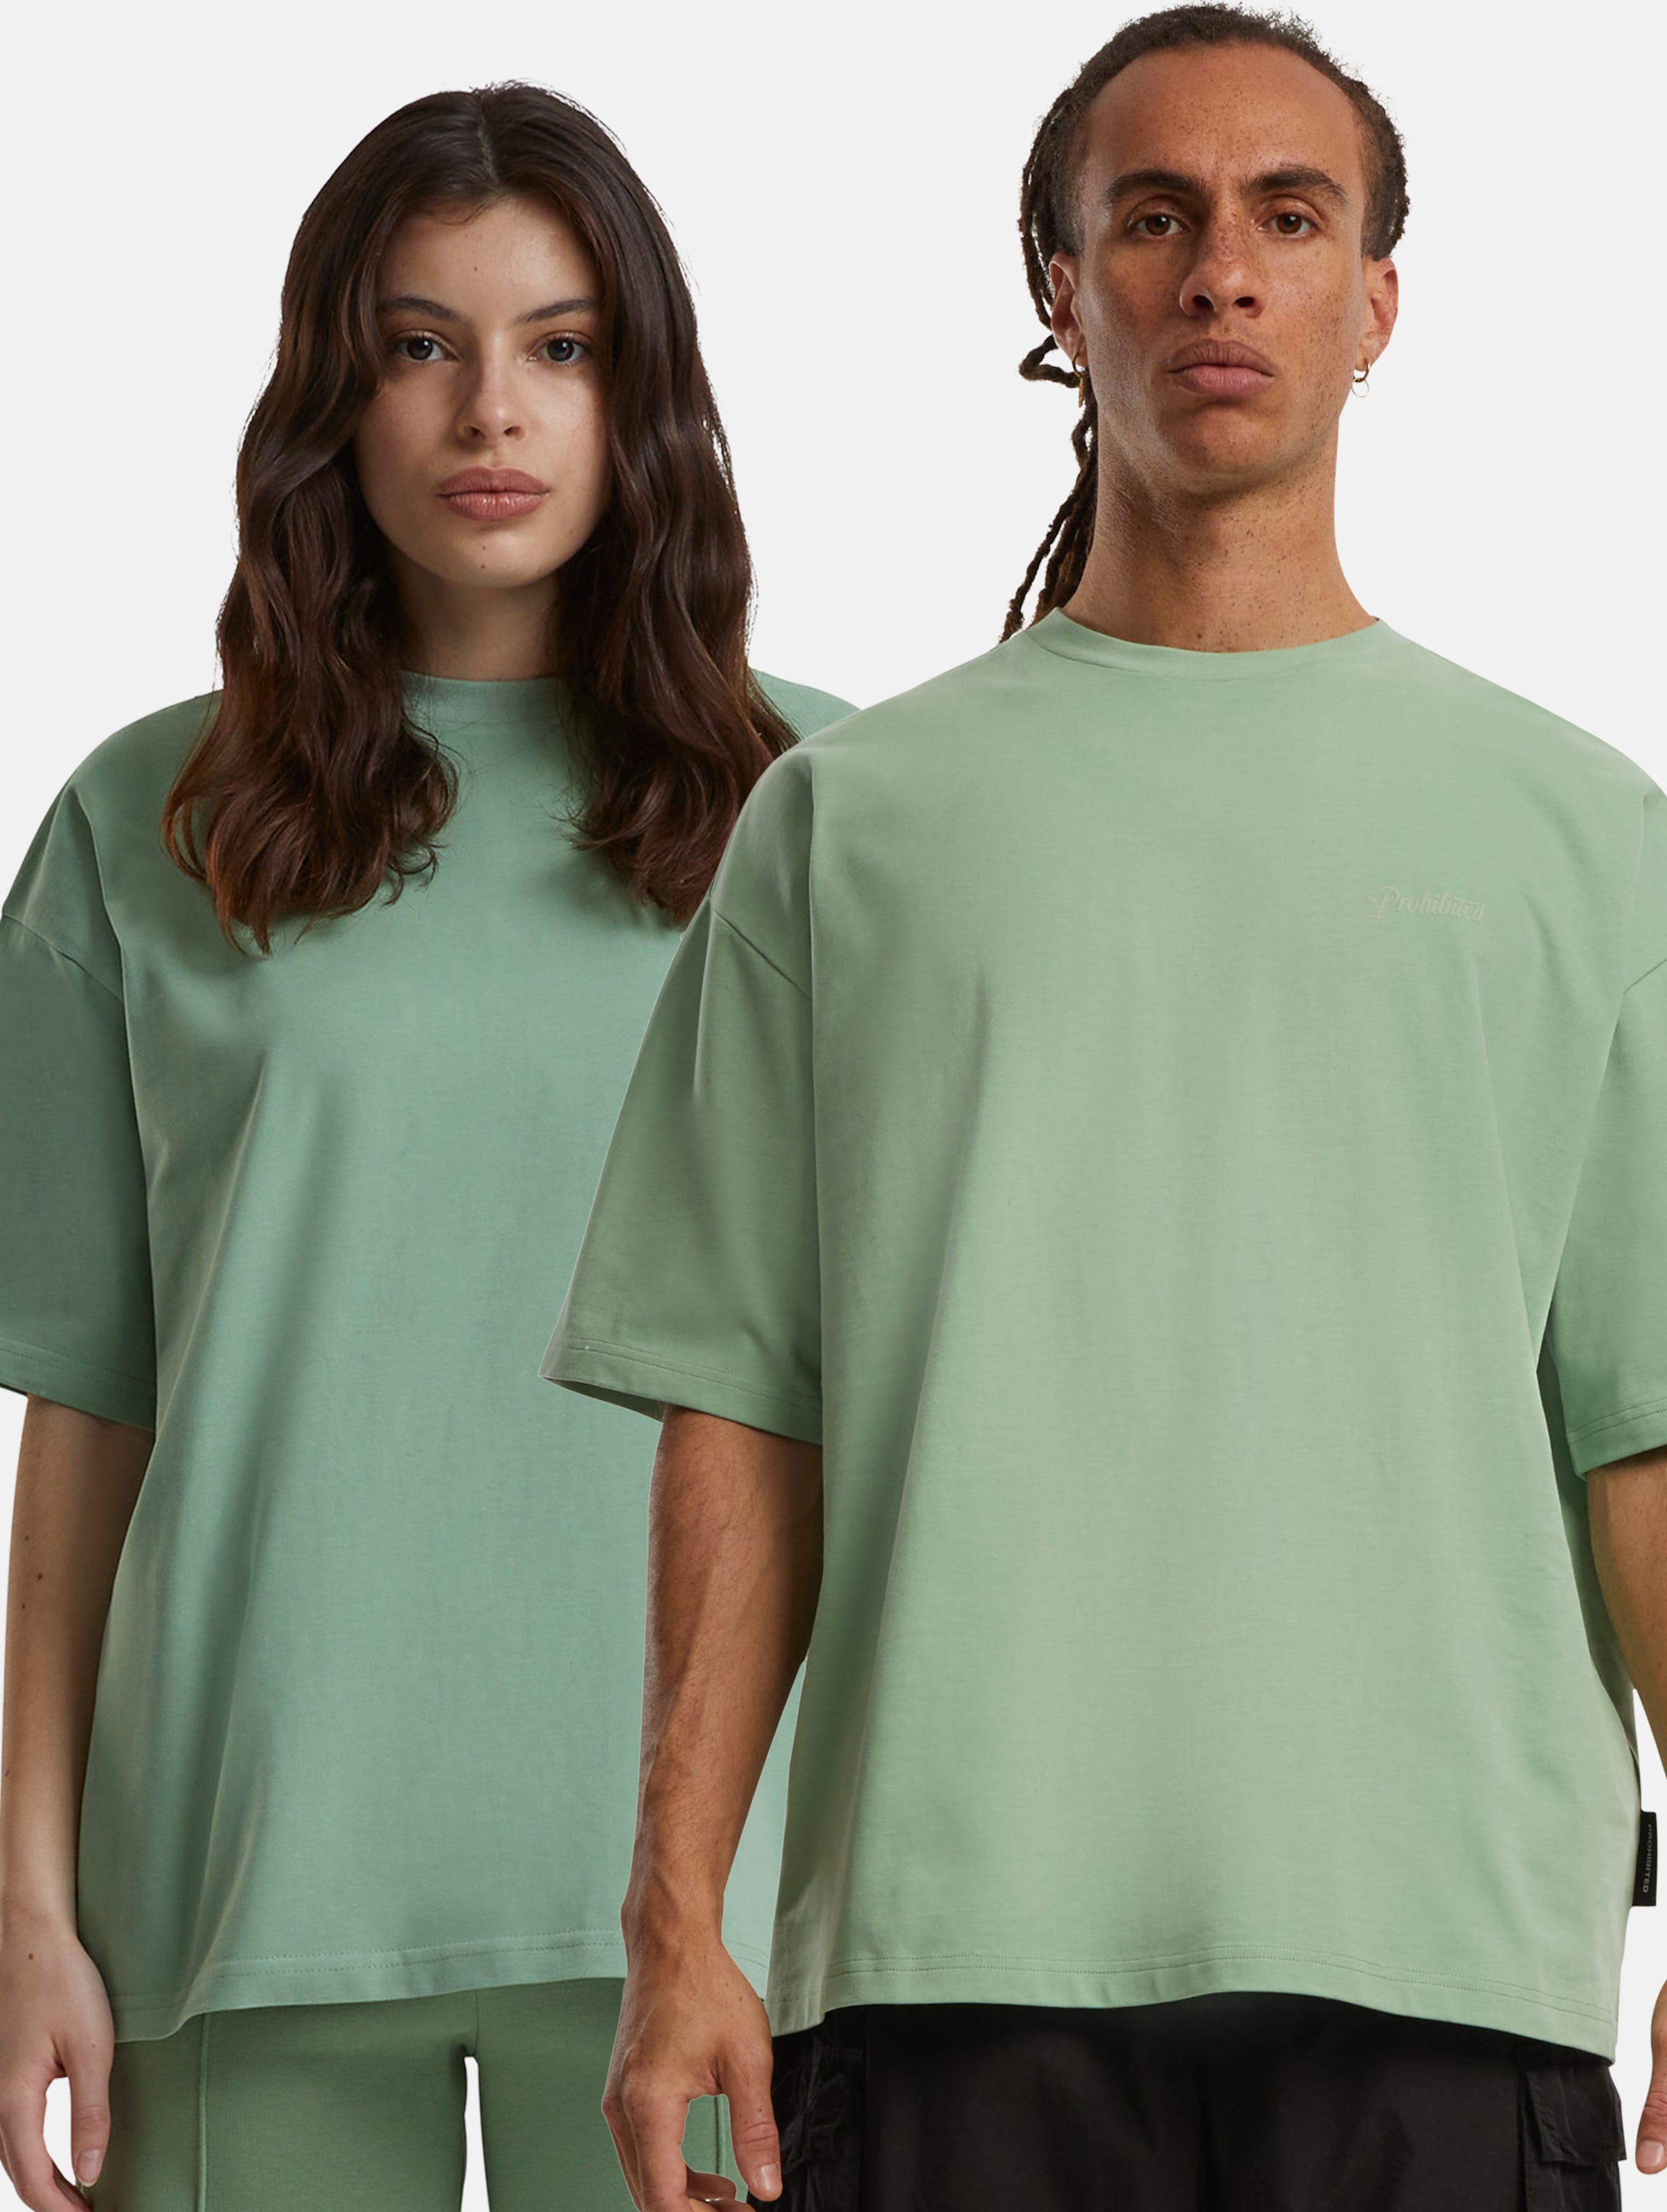 Prohibited 10119 V2 T-Shirts Frauen,Männer,Unisex op kleur groen, Maat S